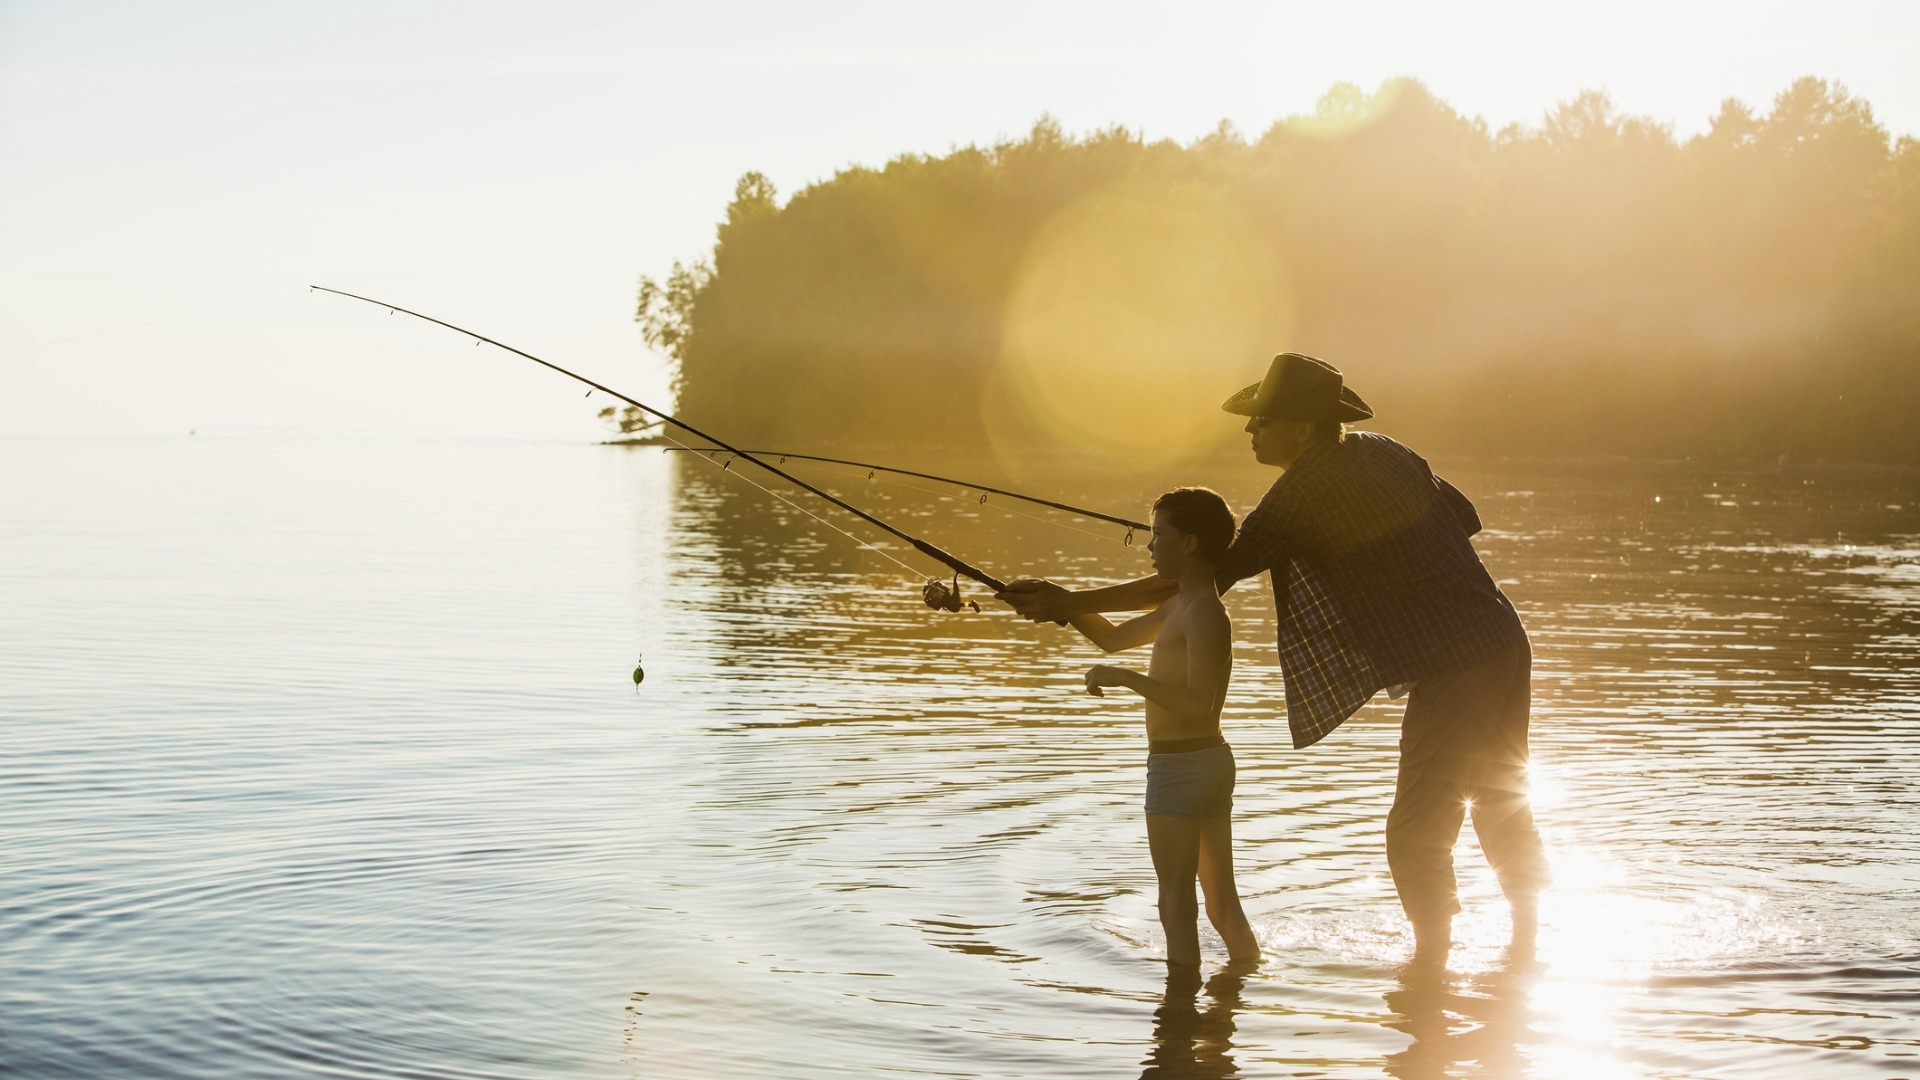 Monet suomalaisten kalastusmuistot liittyvät kalareissuihin isän tai papan kanssa.